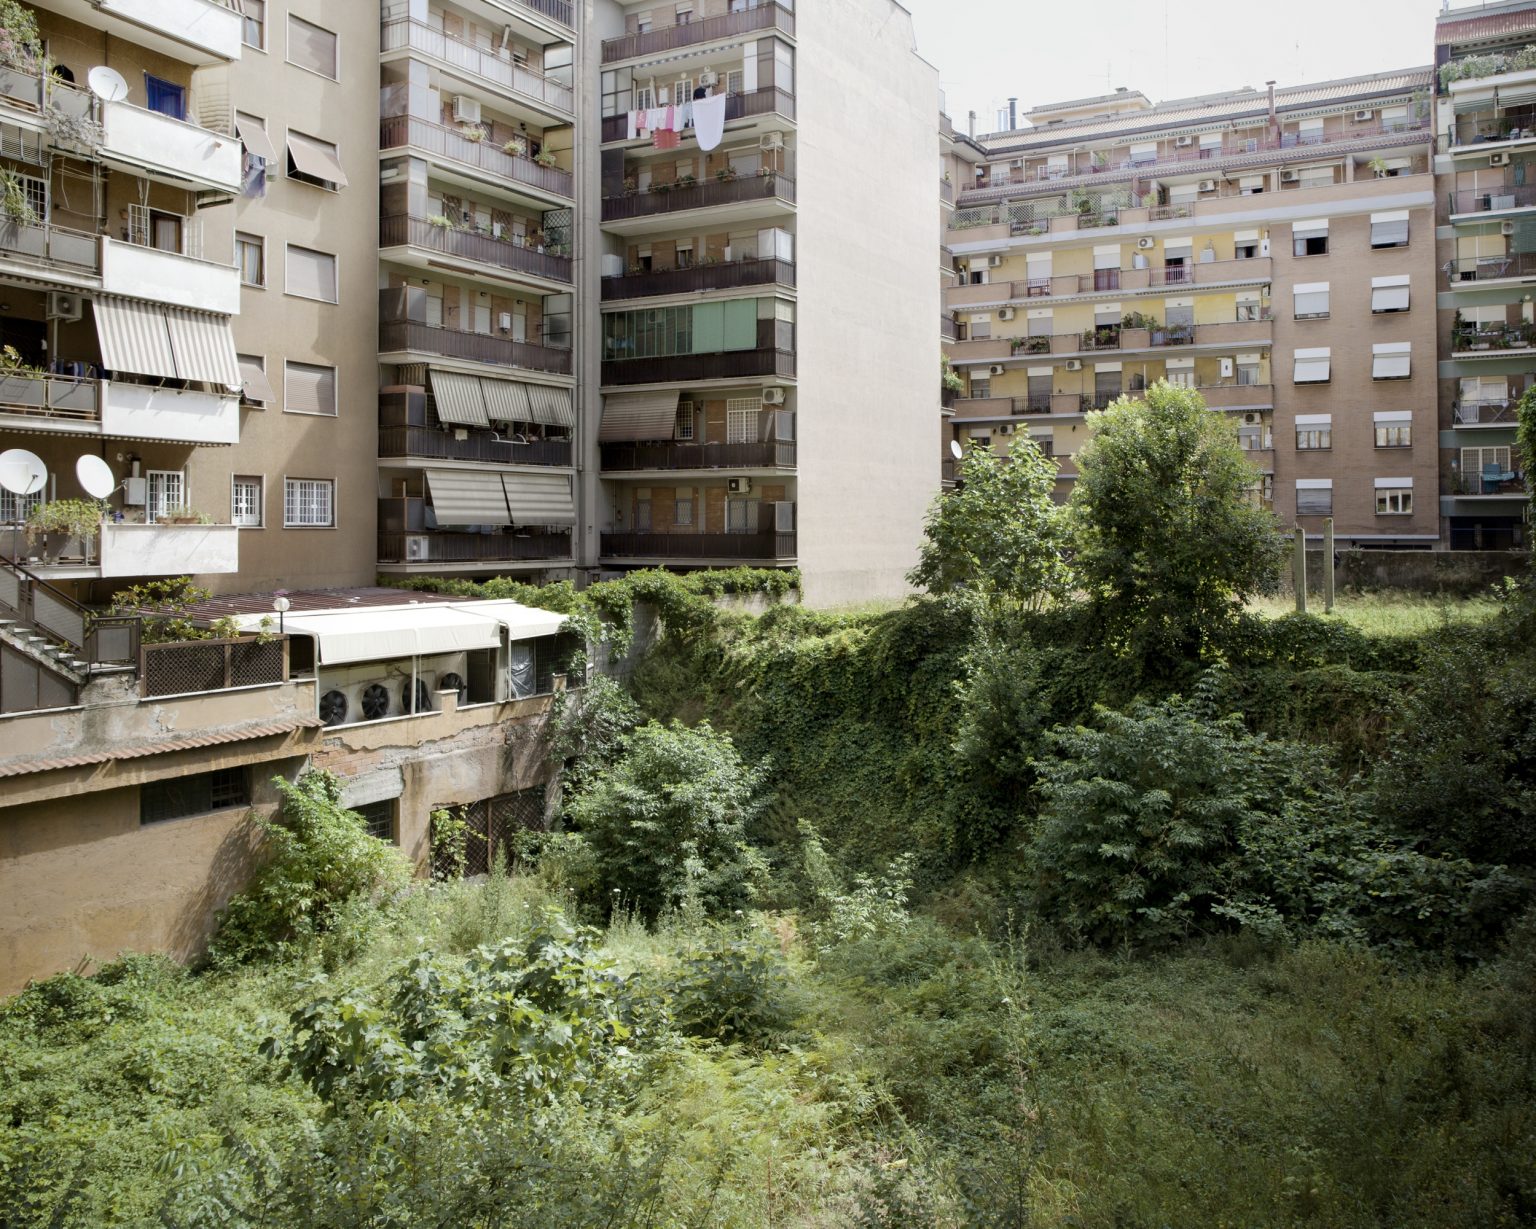 Rome, June 2014 - Pigneto district, abandoned space in via Ettore Giovenale.
><
Roma, giugno 2014 - Pigneto, Spazio abbandonato in via Ettore Giovenale.